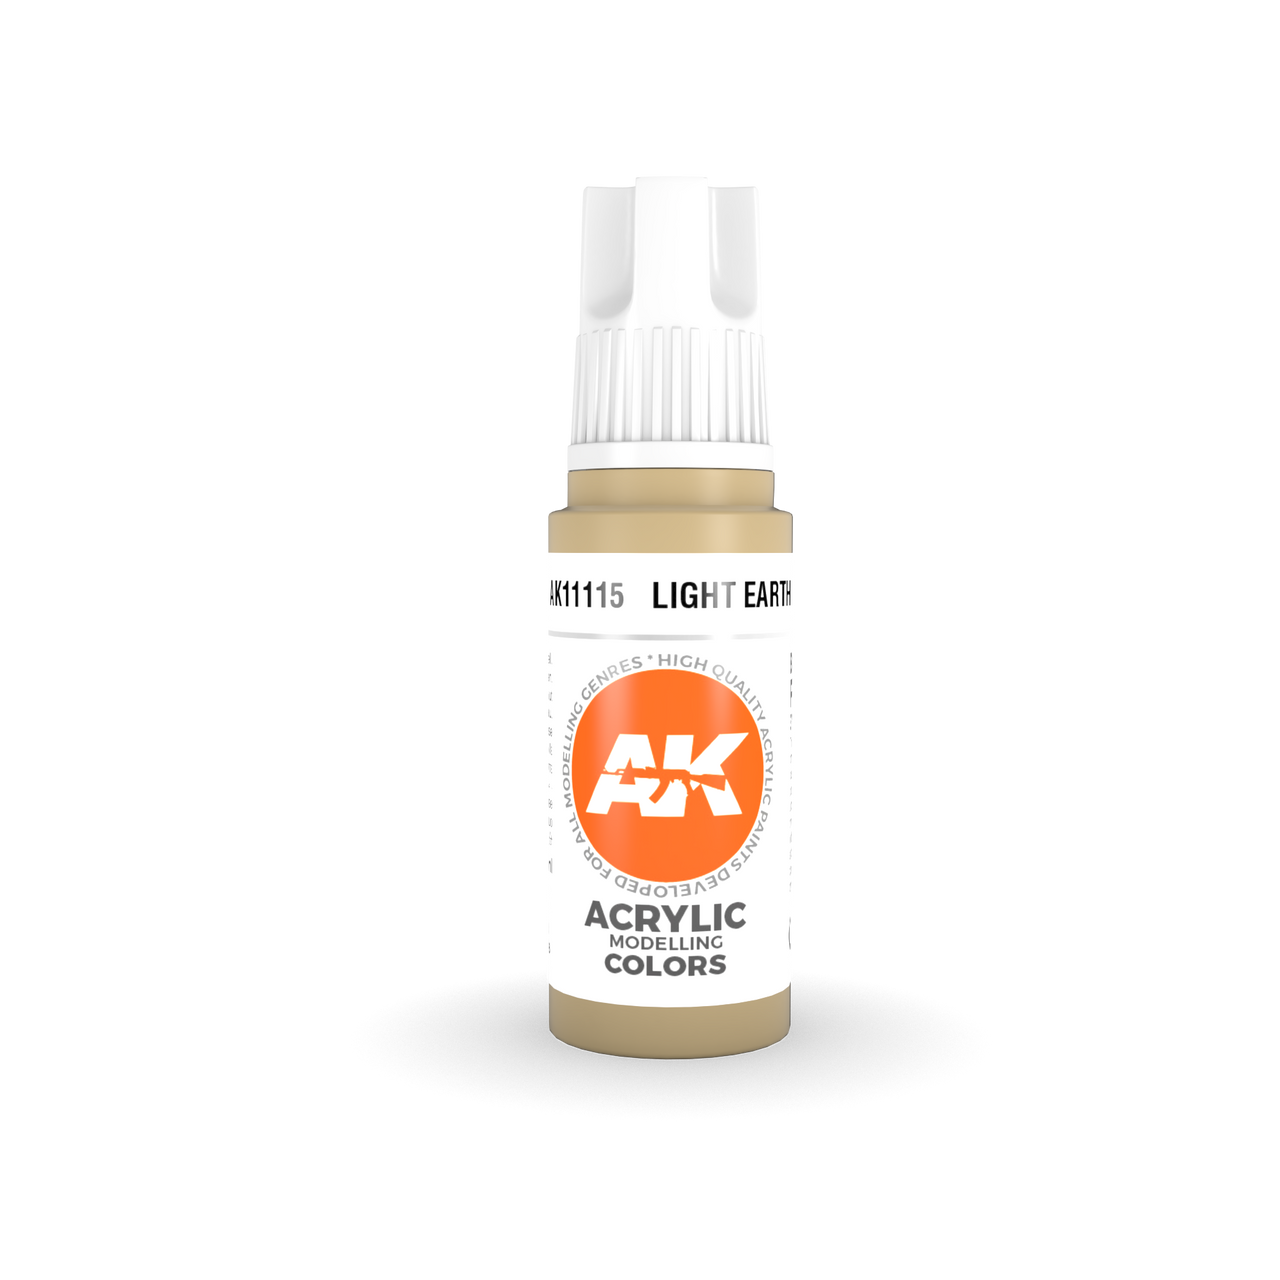 Light Earth - AK 3Gen Acrylic